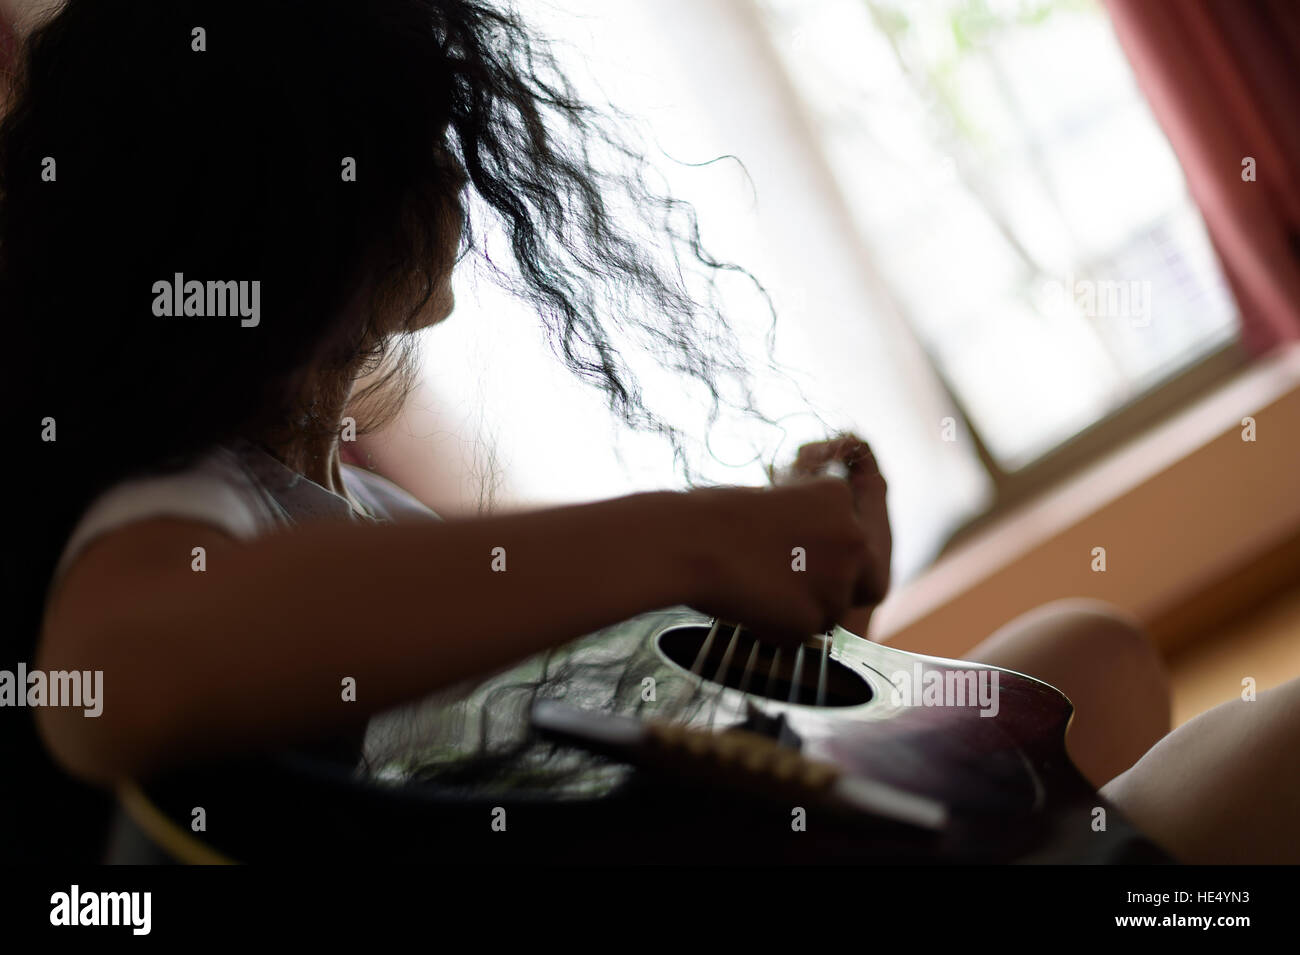 Mädchen mit lockigen Haaren spielt Gitarre, eine Silhouette und Hintergrund Unschärfe, Gegenlicht Stockfoto